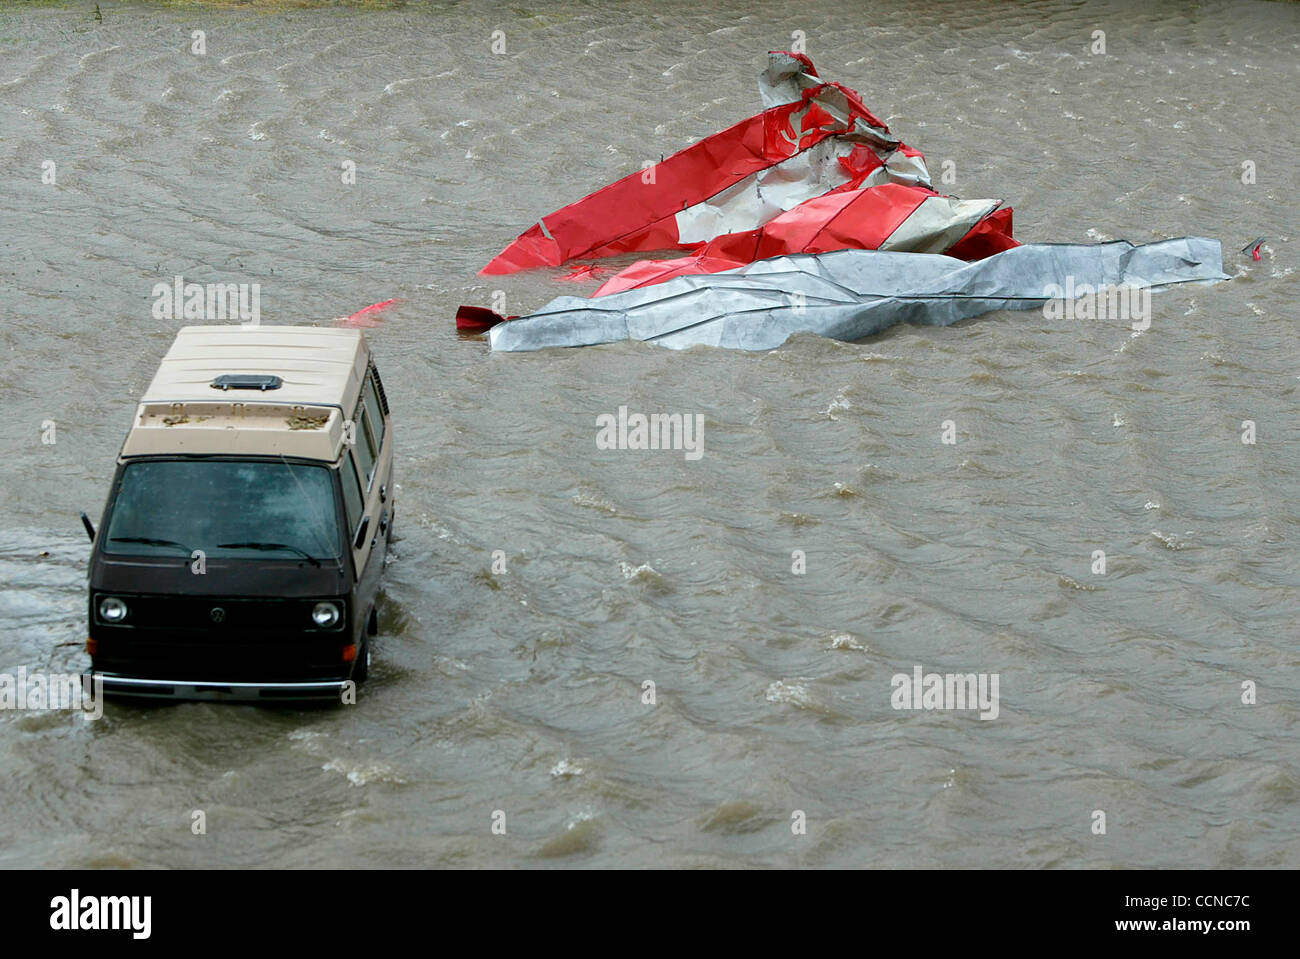 16 Sep, 2004; Pensacola, FL, EEUU; daños de inundación a lo largo de la Pensacola, zona centro causados por el huracán Iván. Foto de stock